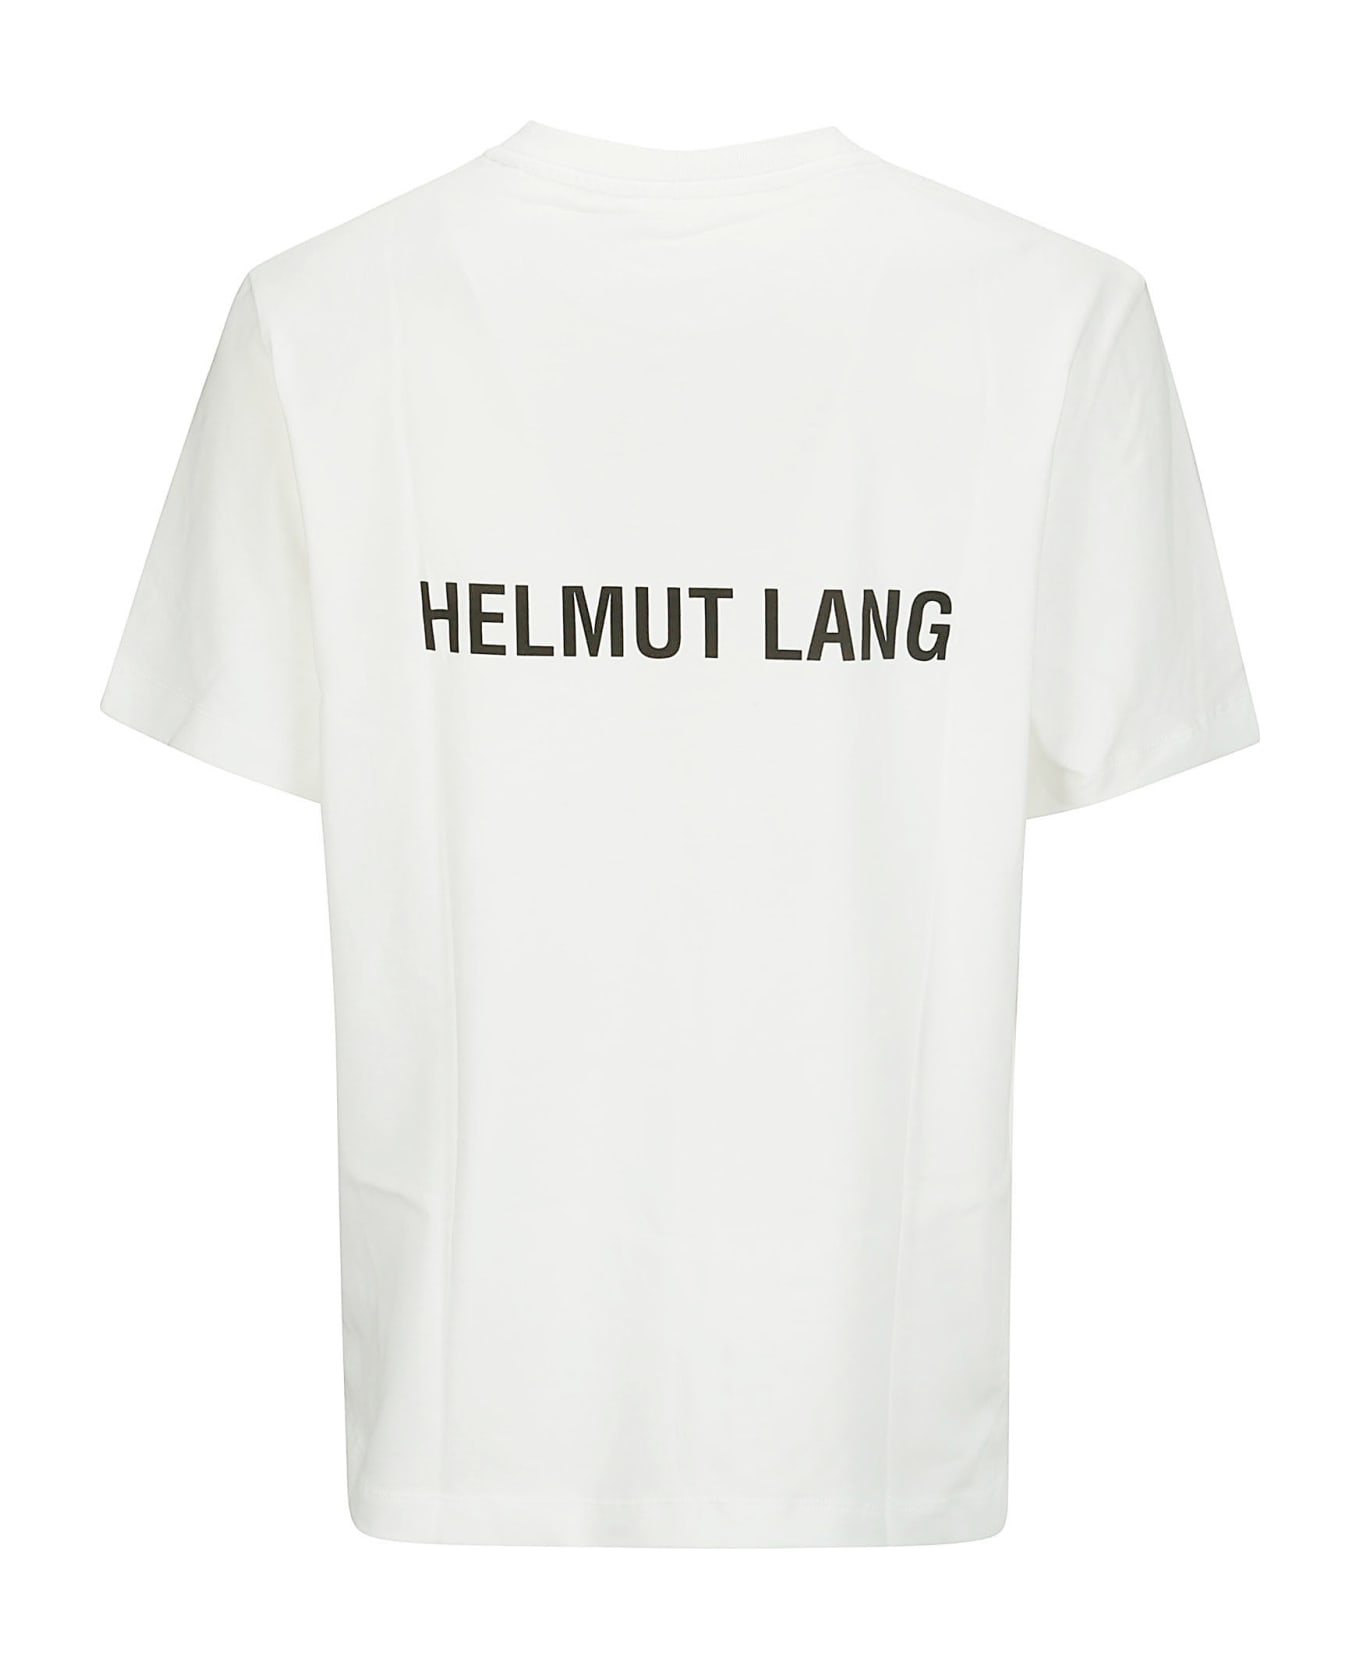 Helmut Lang Logo Tee - WHITE